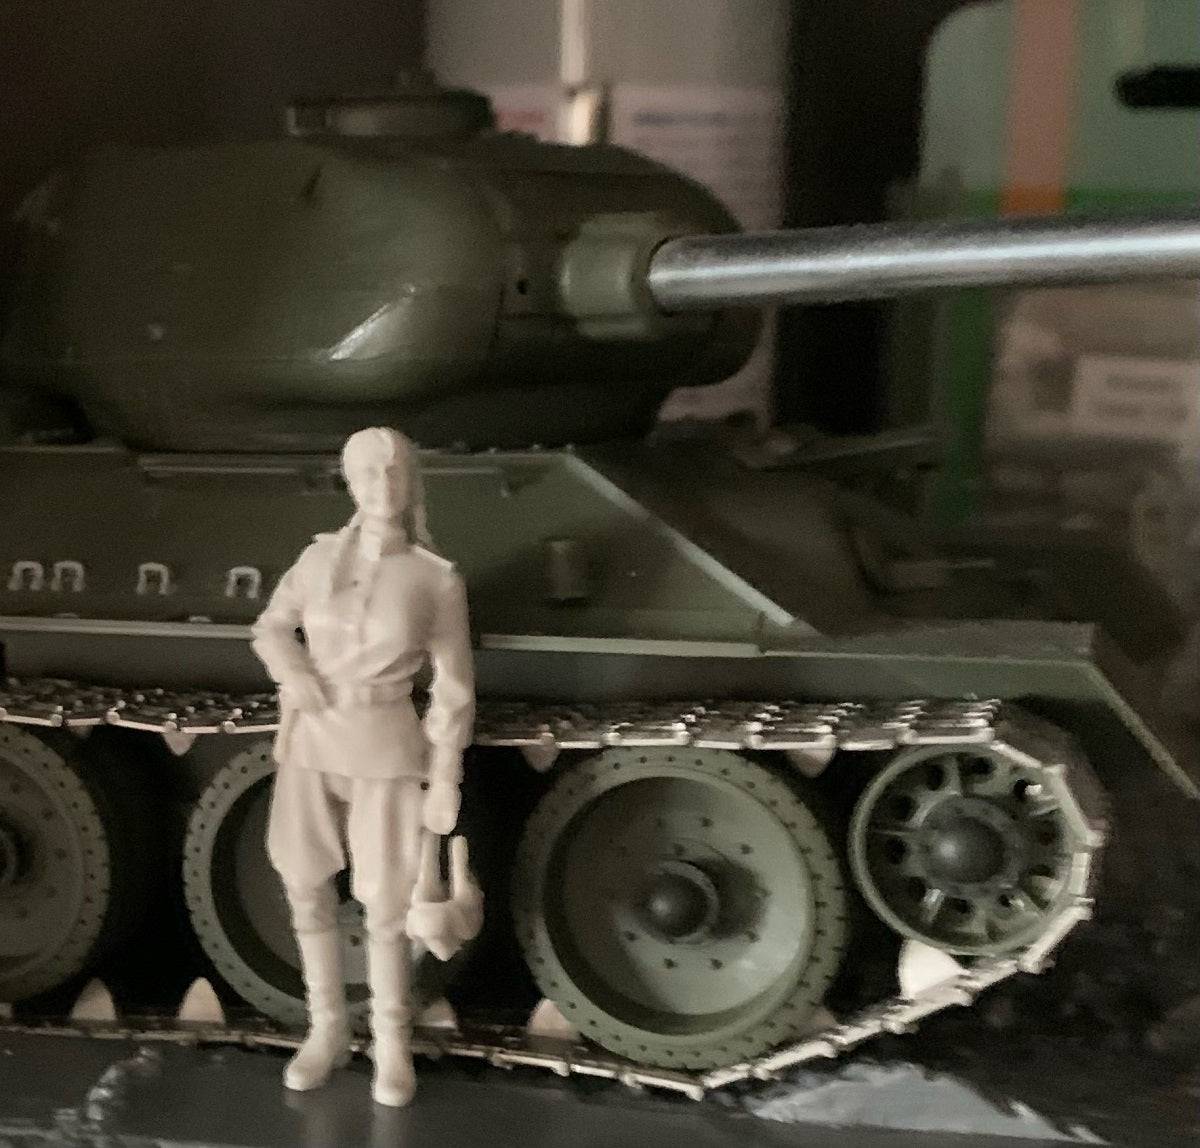 1/35 Resin Model Kit Girl Soviet Soldier Tankman WW2 Unpainted - Model-Fan-Store